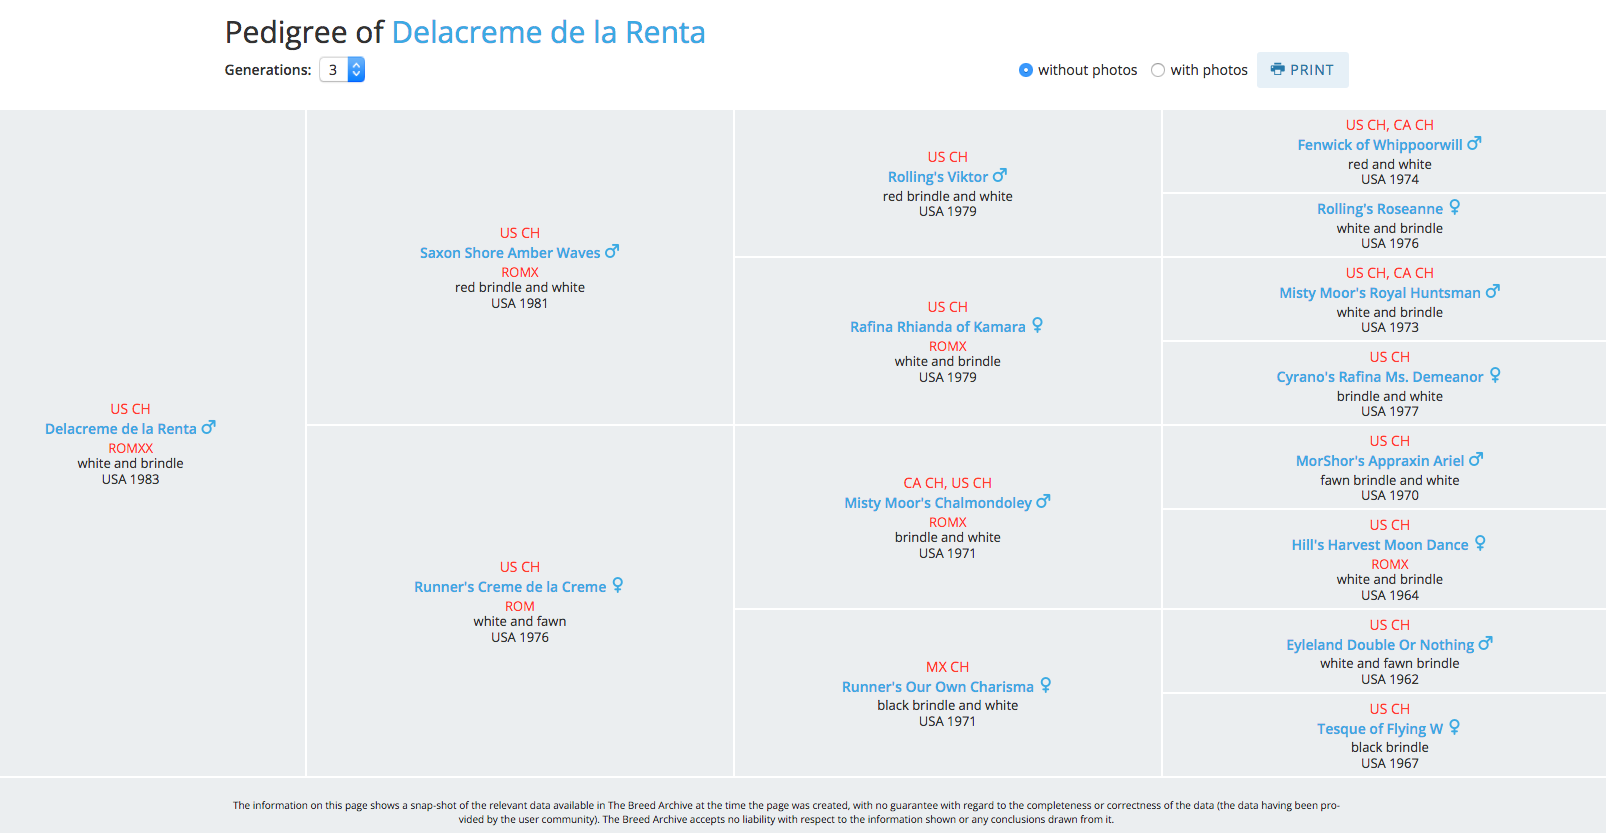 printable version of pedigree of Ch. Delacreme de la Renta